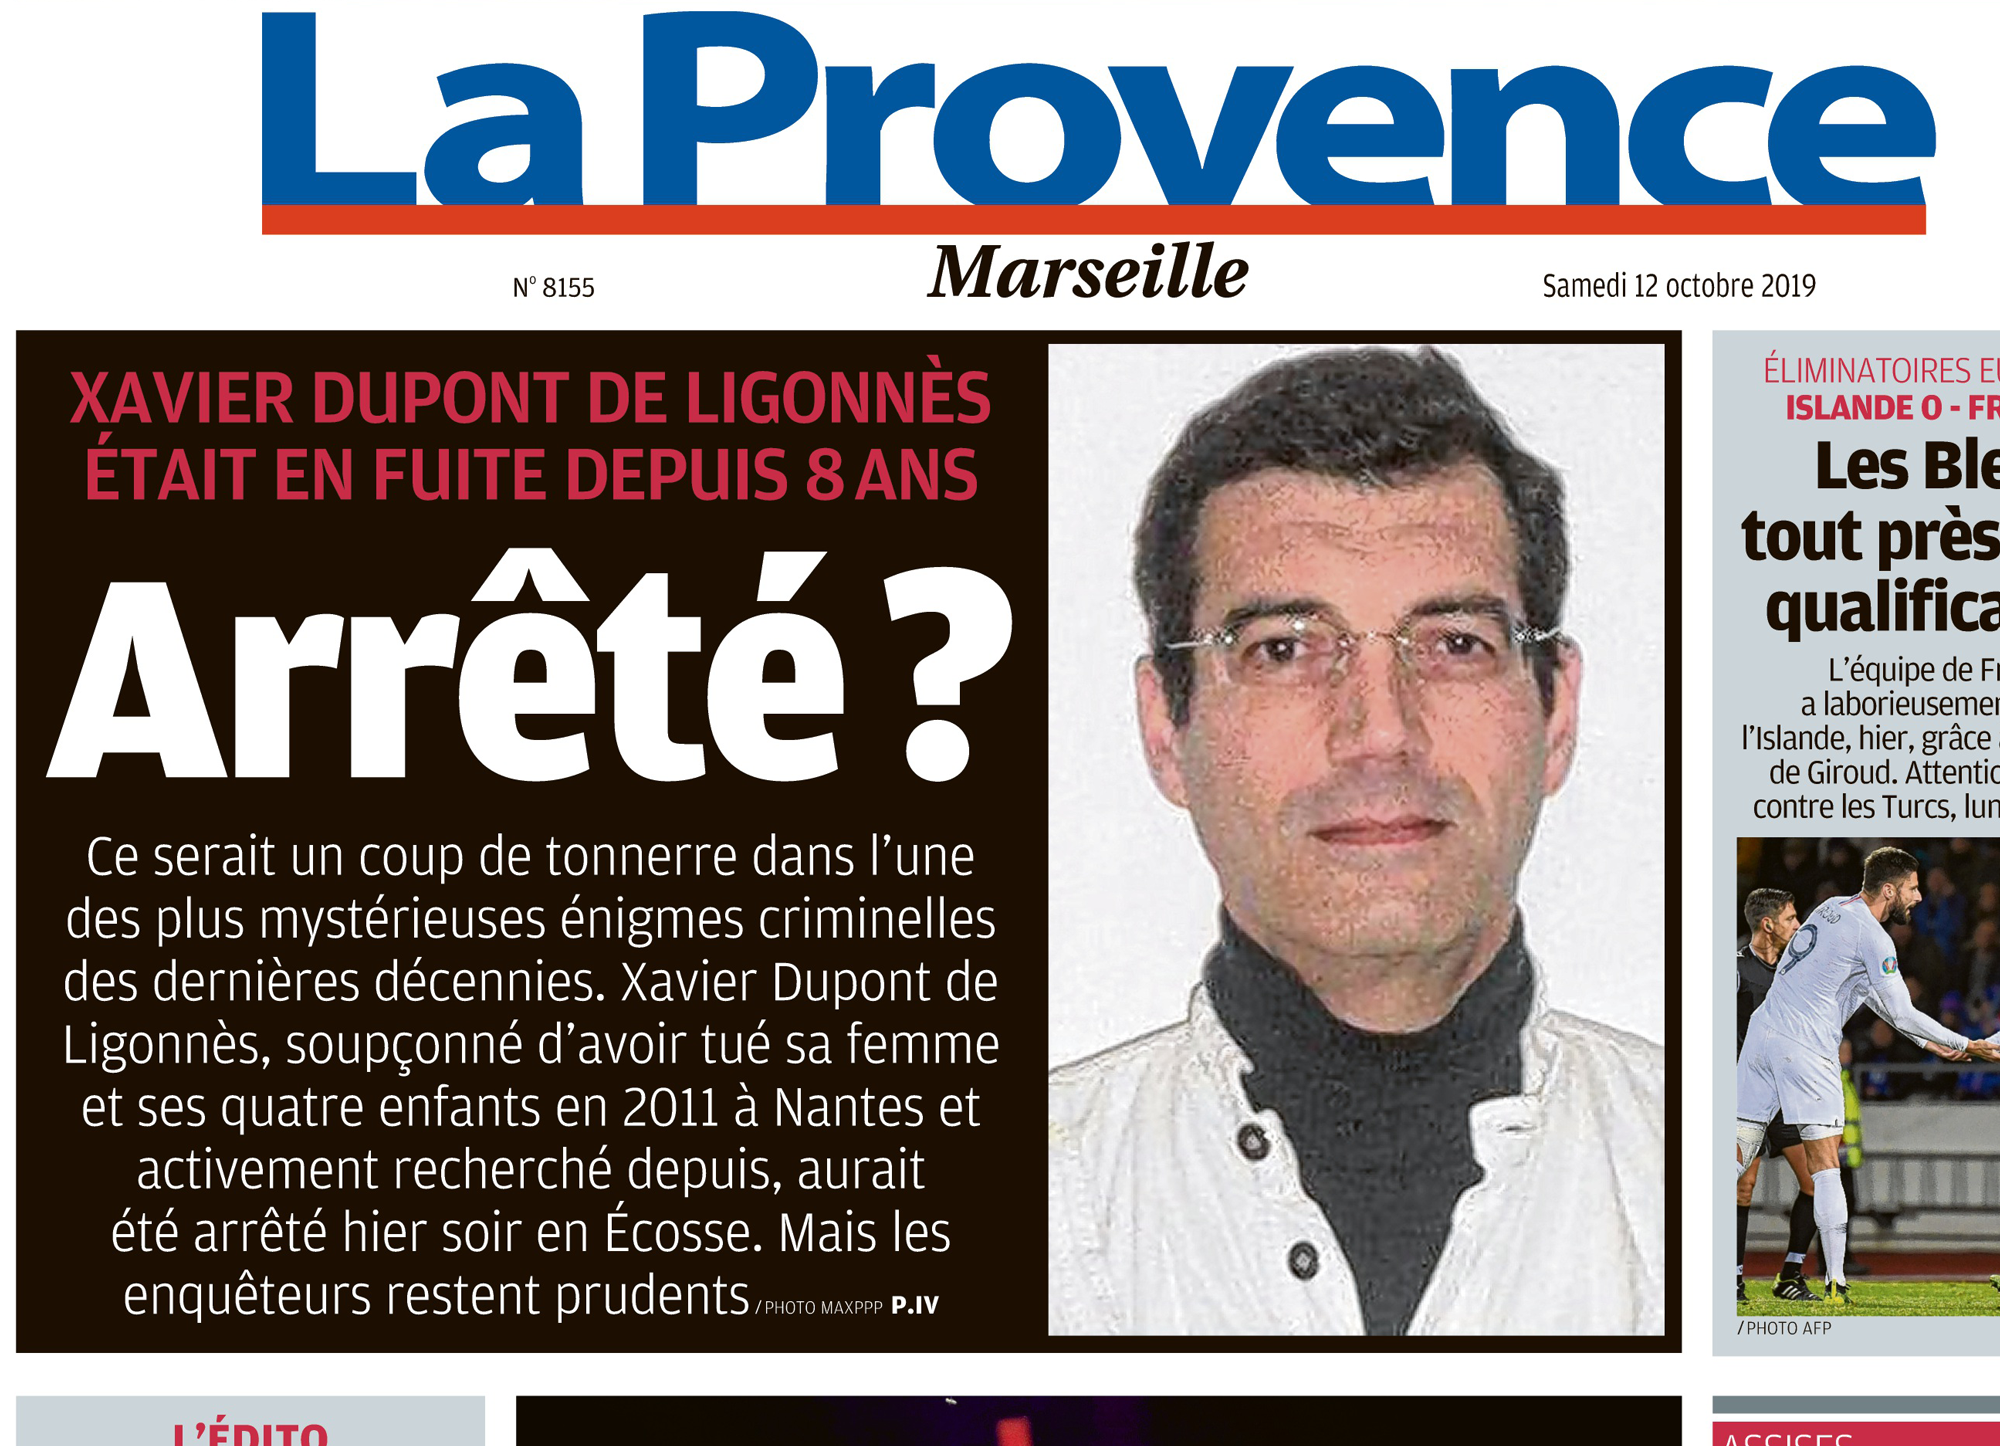 Une de La Provence du samedi 12 octobre suite à l'arrestation d'un homme suspecté d'être Xavier Dupont de Ligonnès